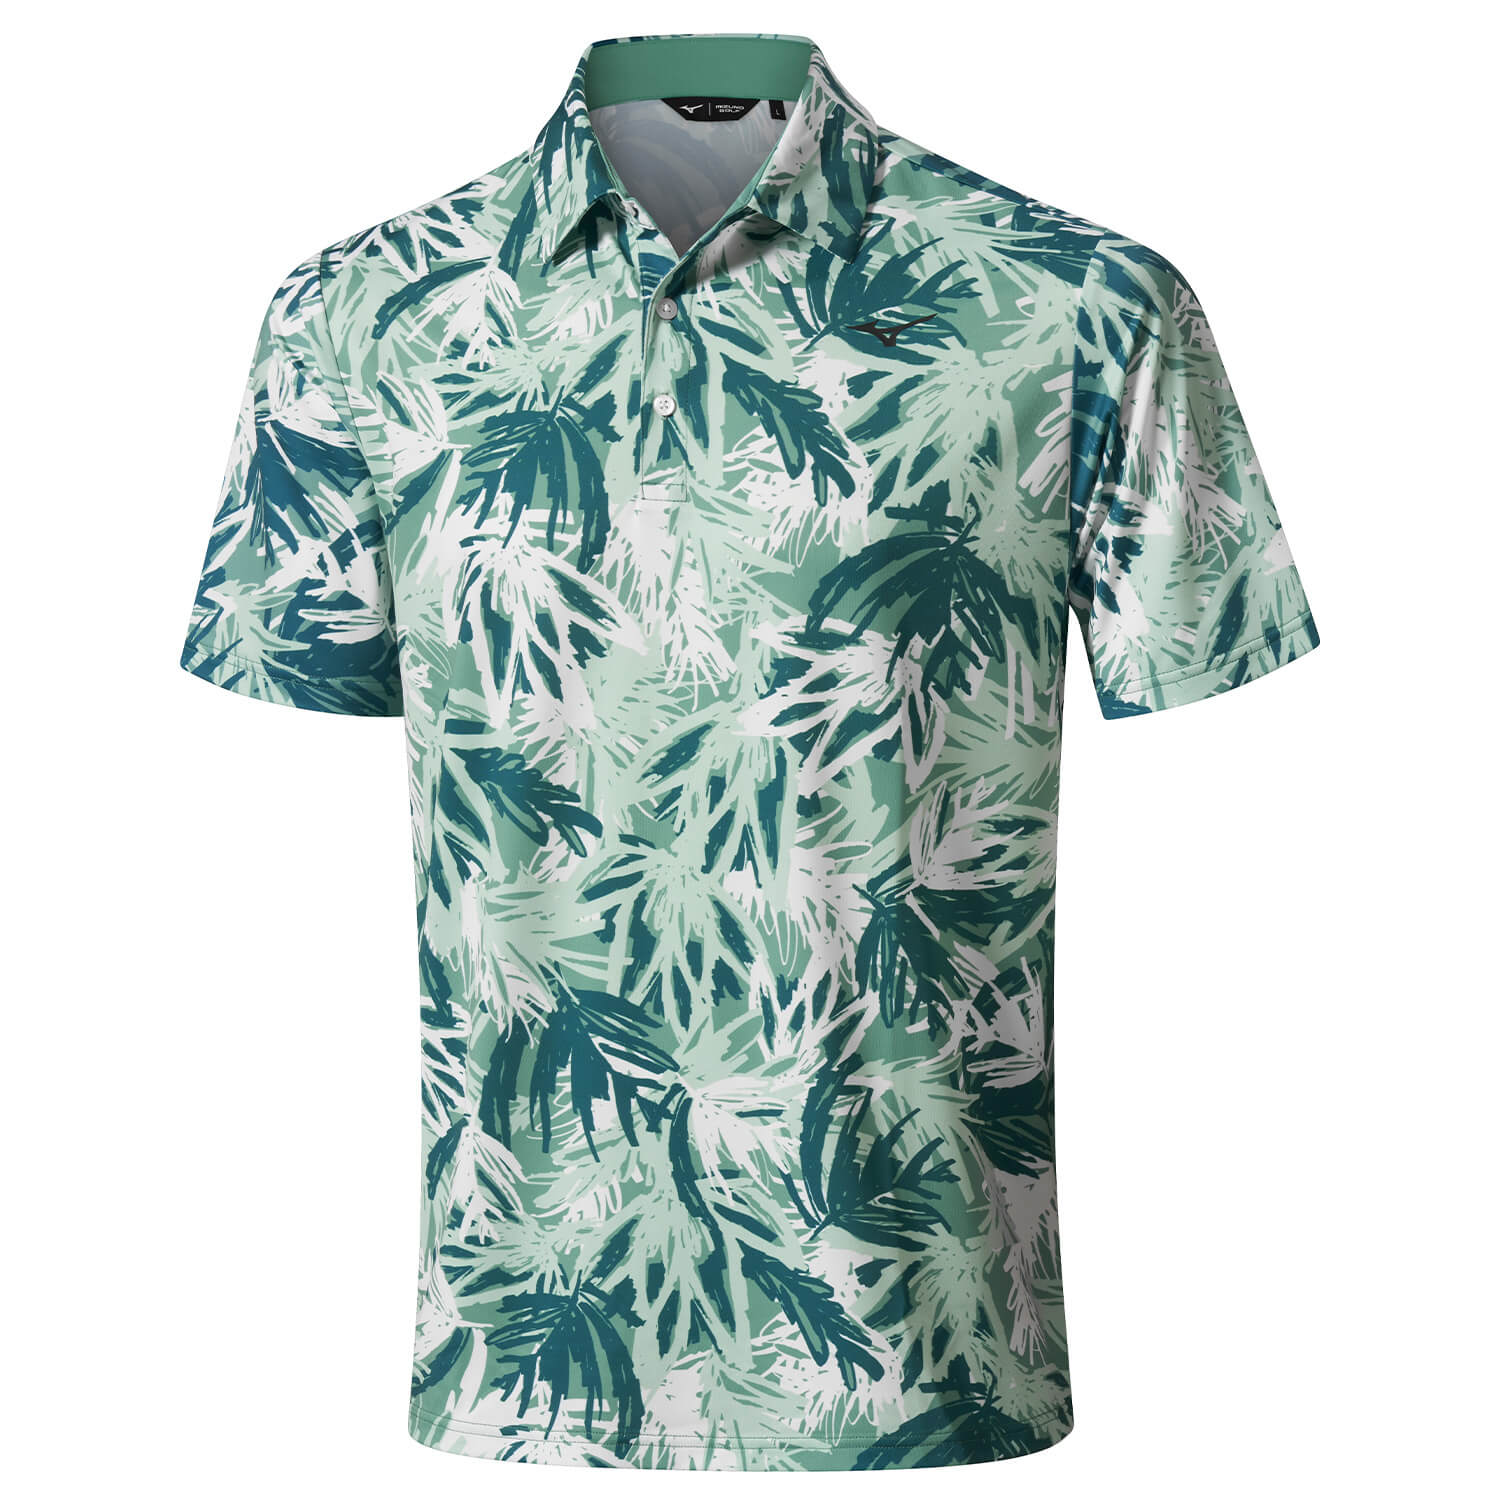 Mizuno Cali Cool Polo Shirt – Canton Green